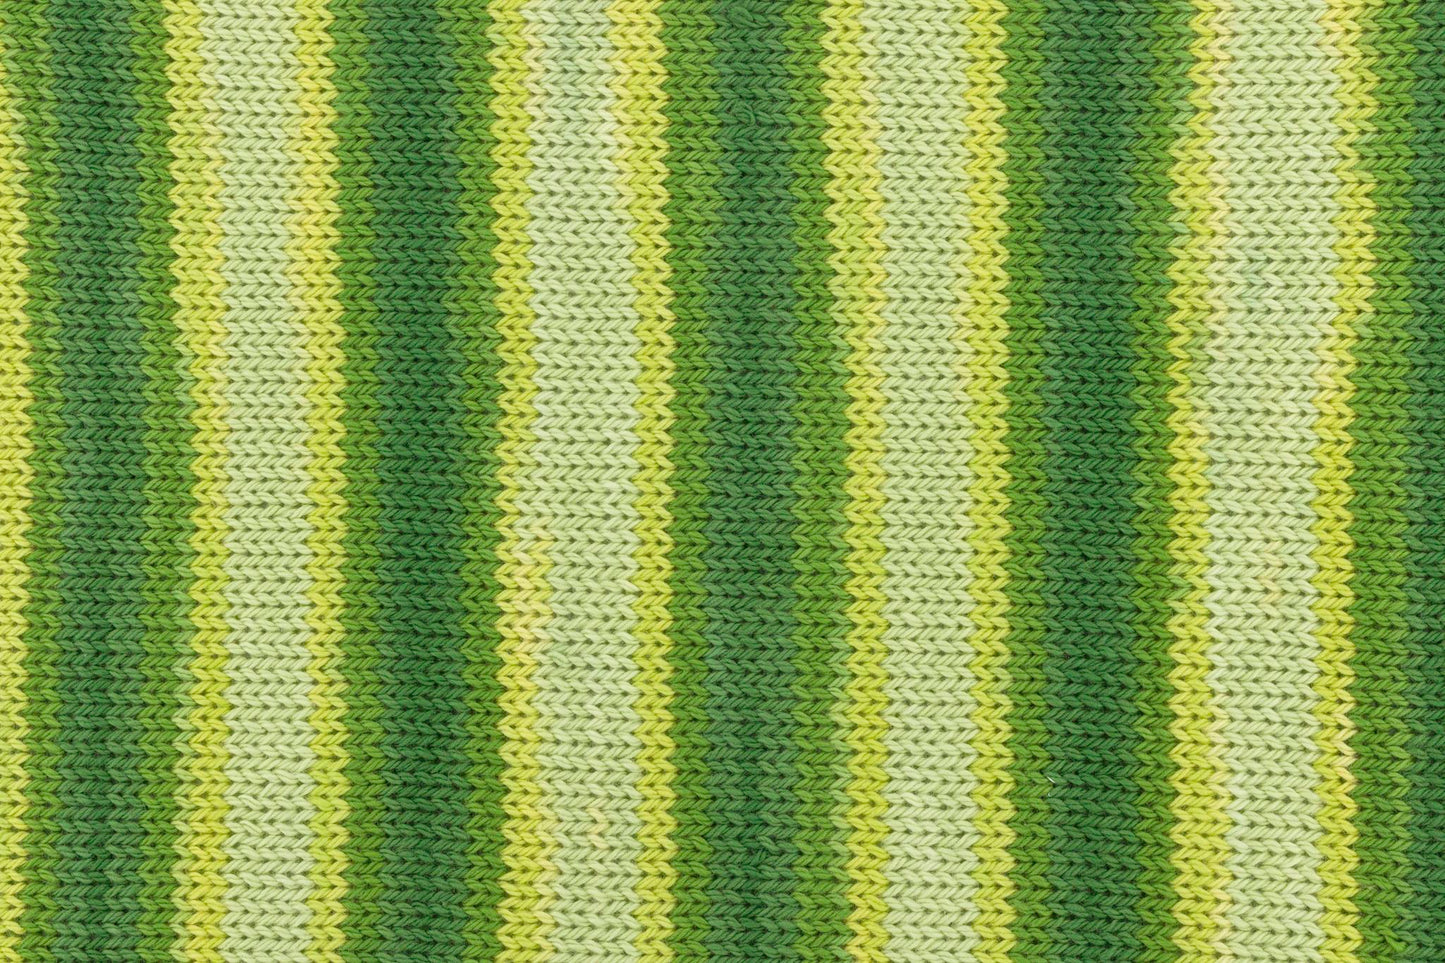 Tropic Cotton 150g, 90287, colour 5, apple